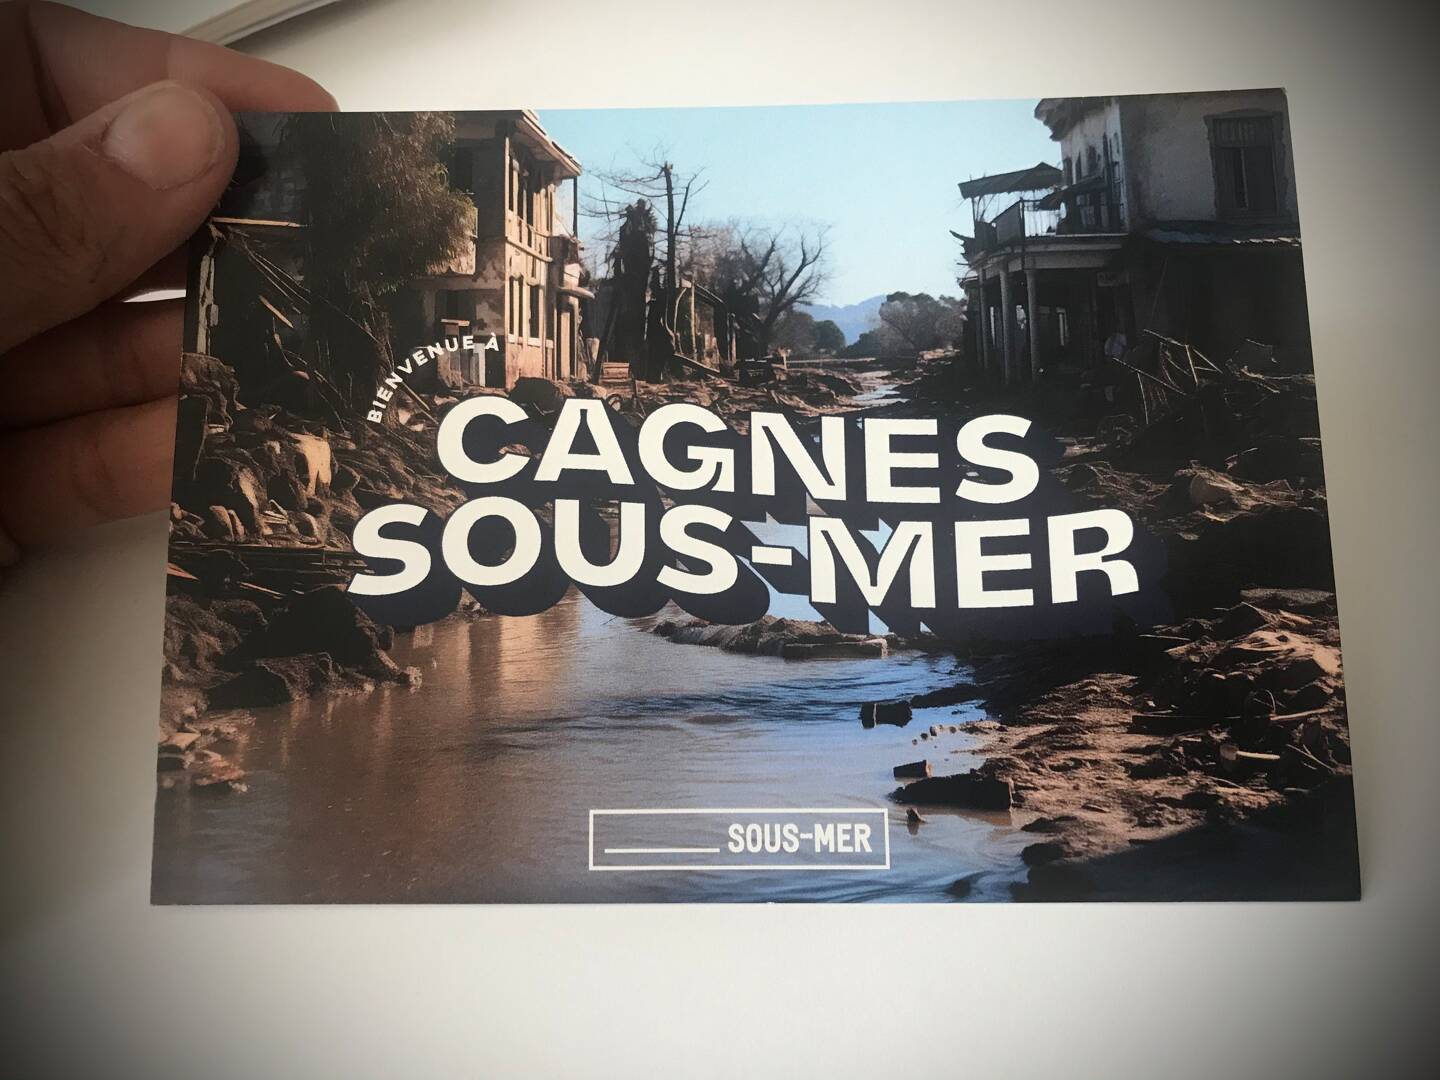 Une carte postale "Cagnes-sous-Mer" a été envoyée à la mairie de Cagnes-sur-Mer par l’association de protection des océans, Surfrider.